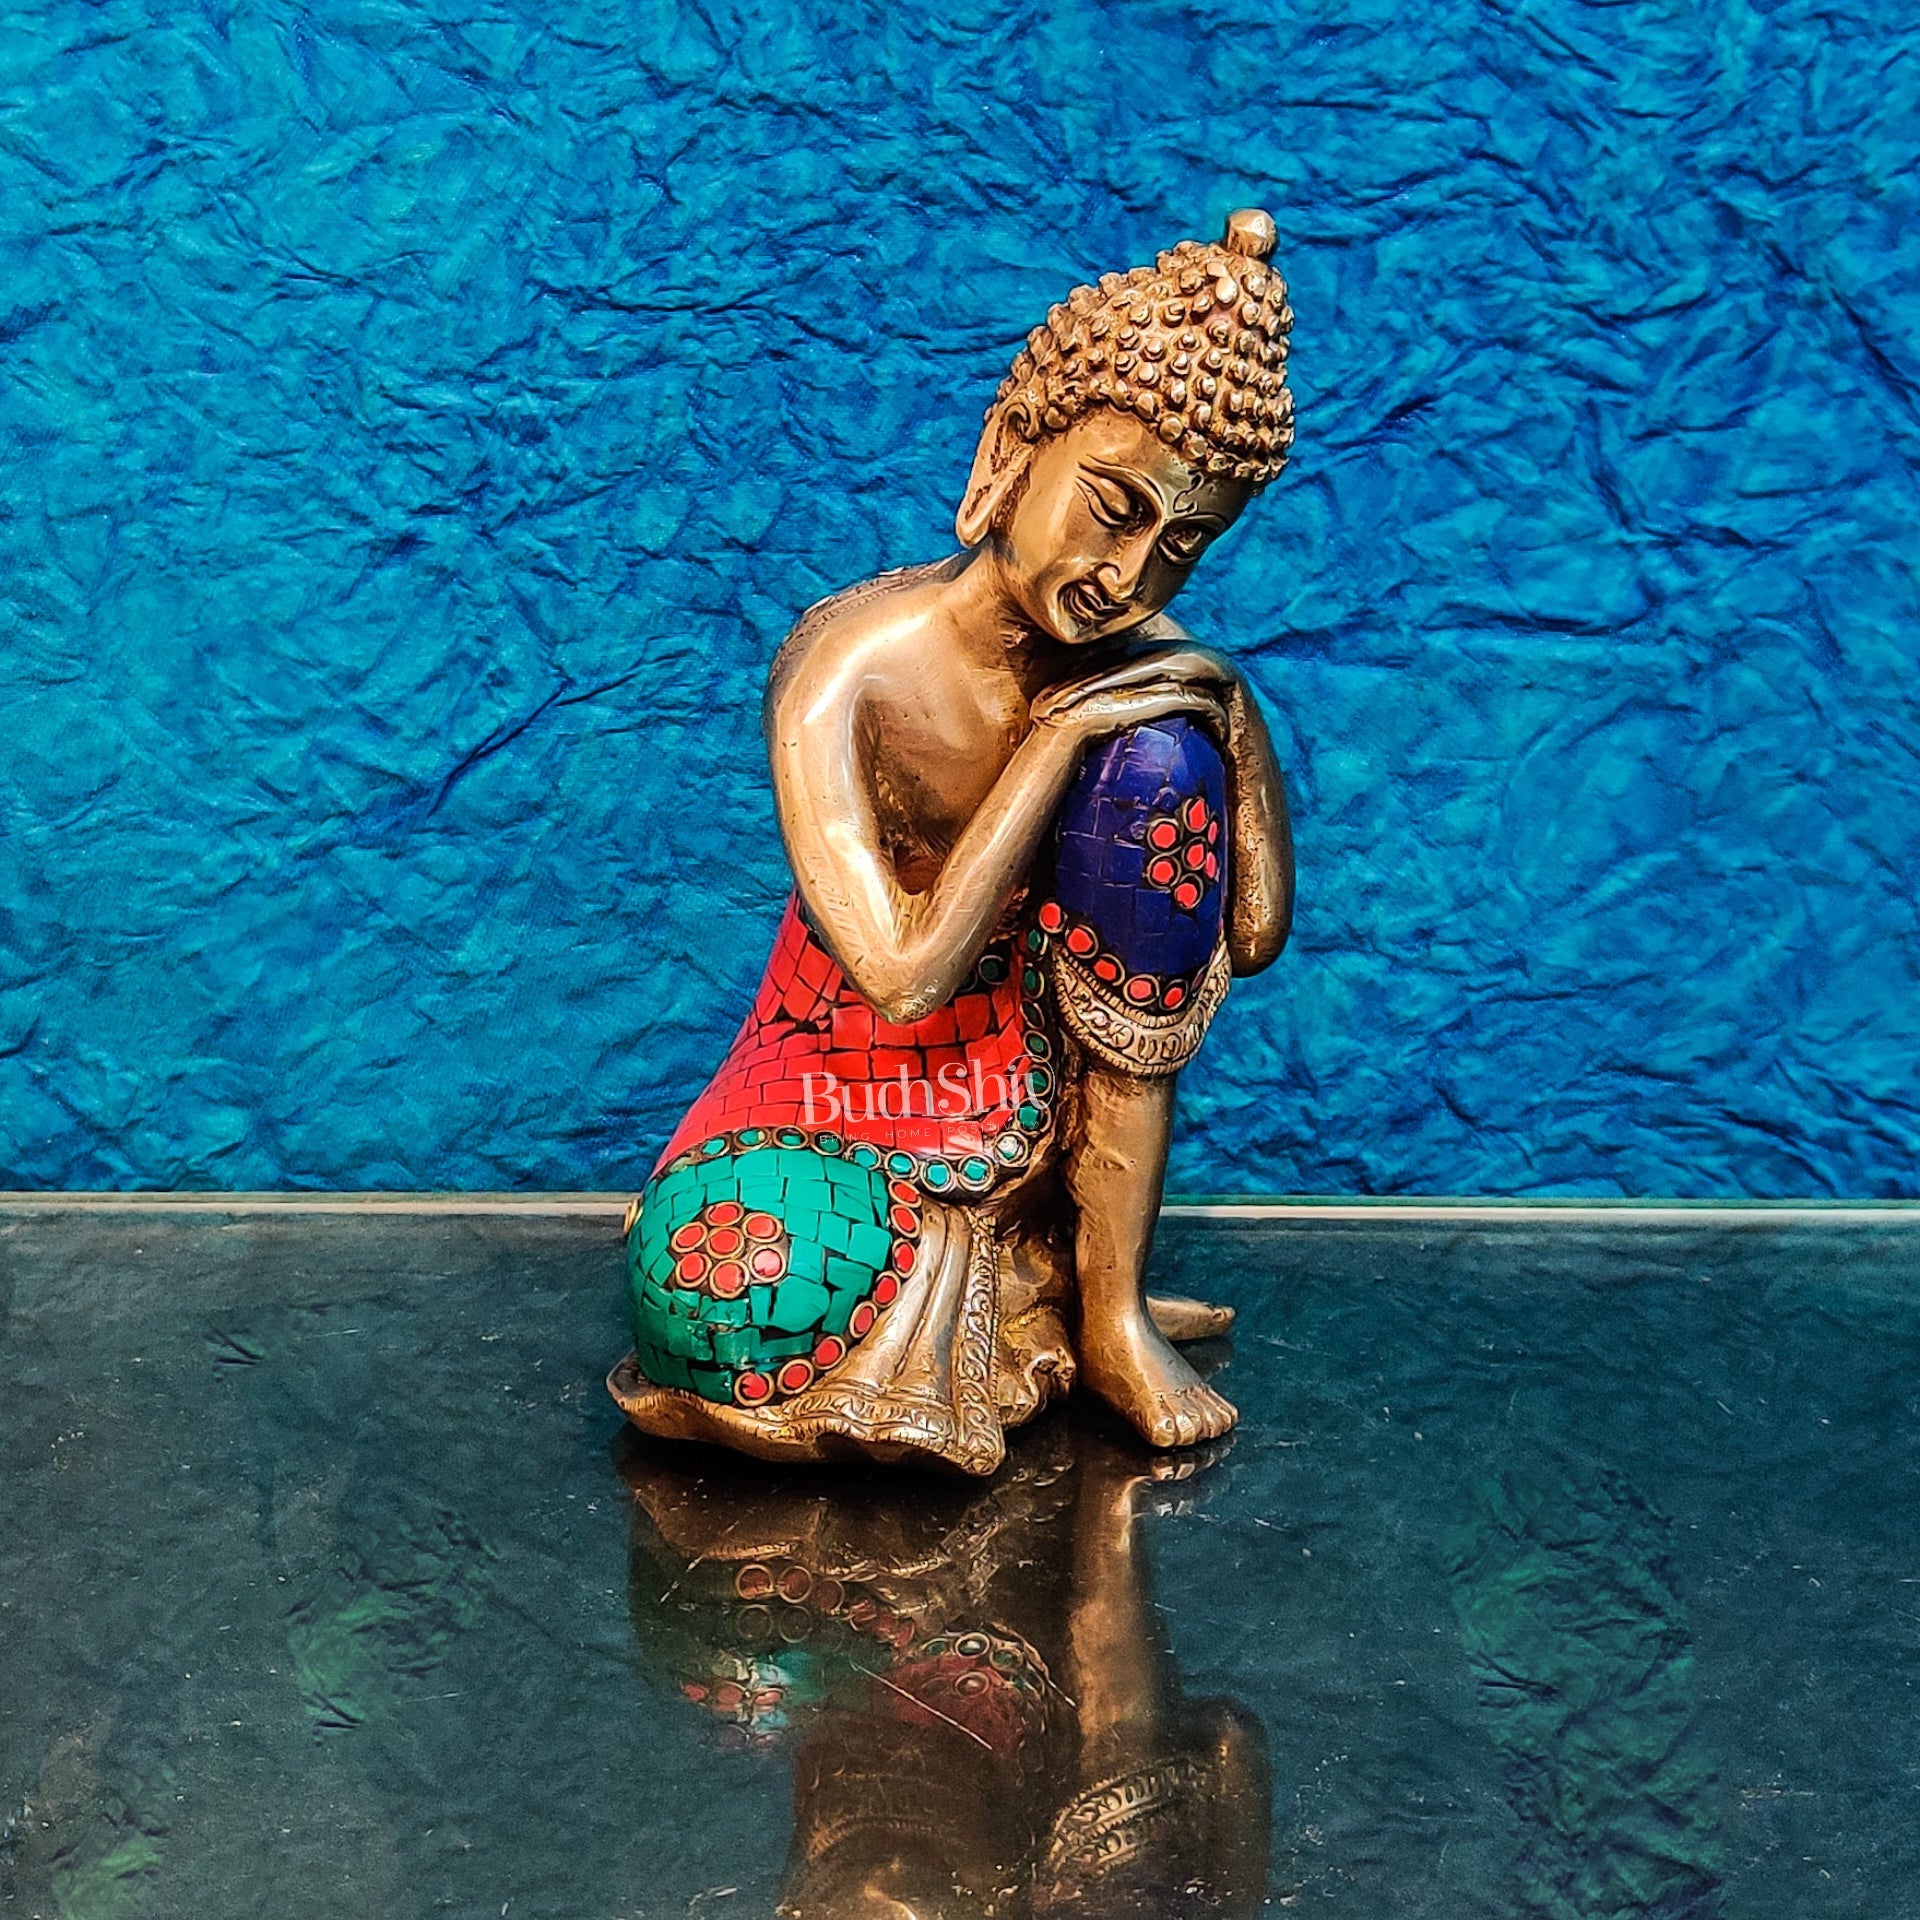 Brass Thinking buddha idol 8" - Budhshiv.com